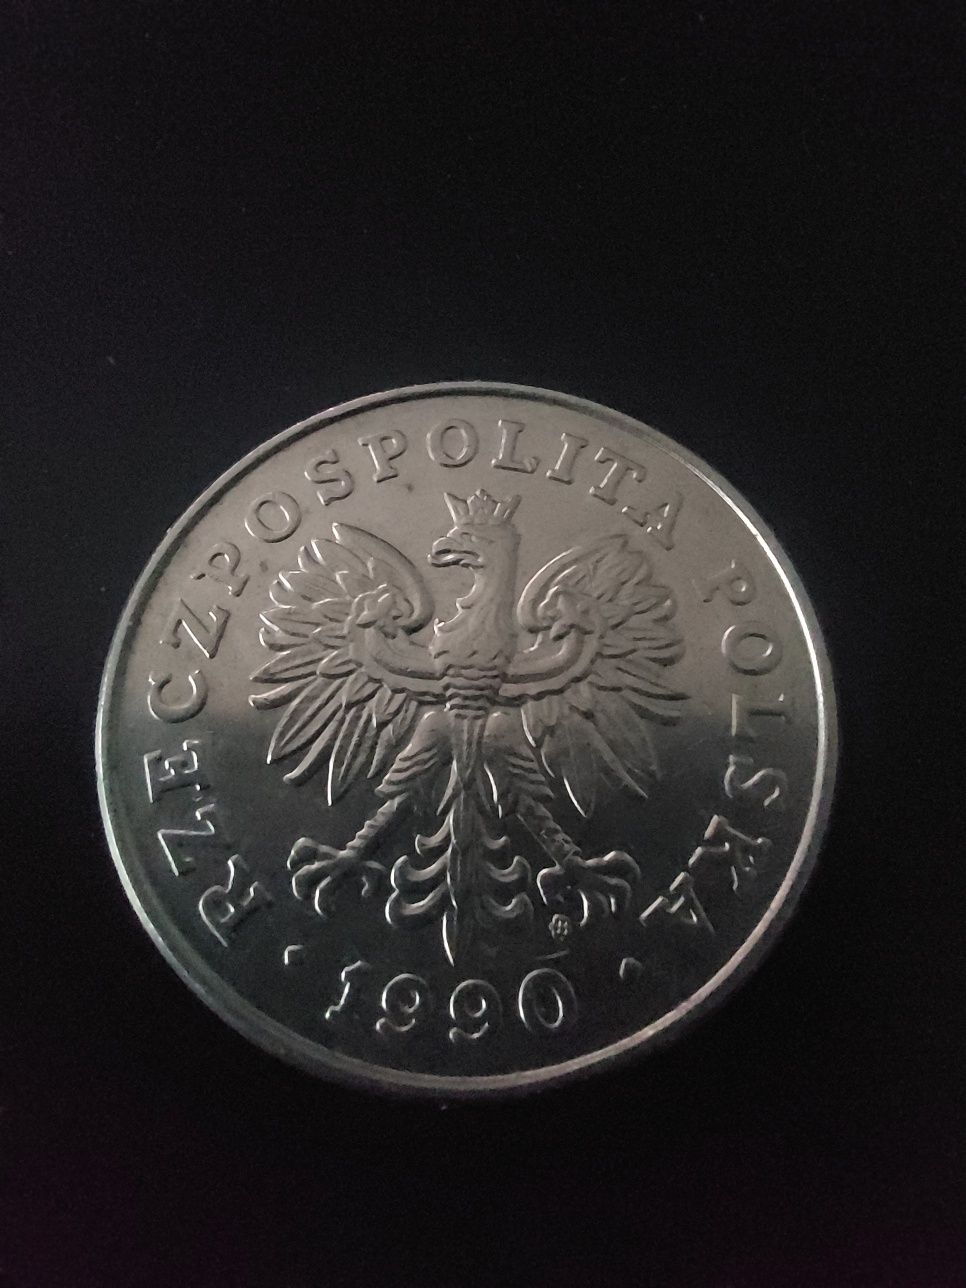 100 zł - 1990 - w koronie - mennicza